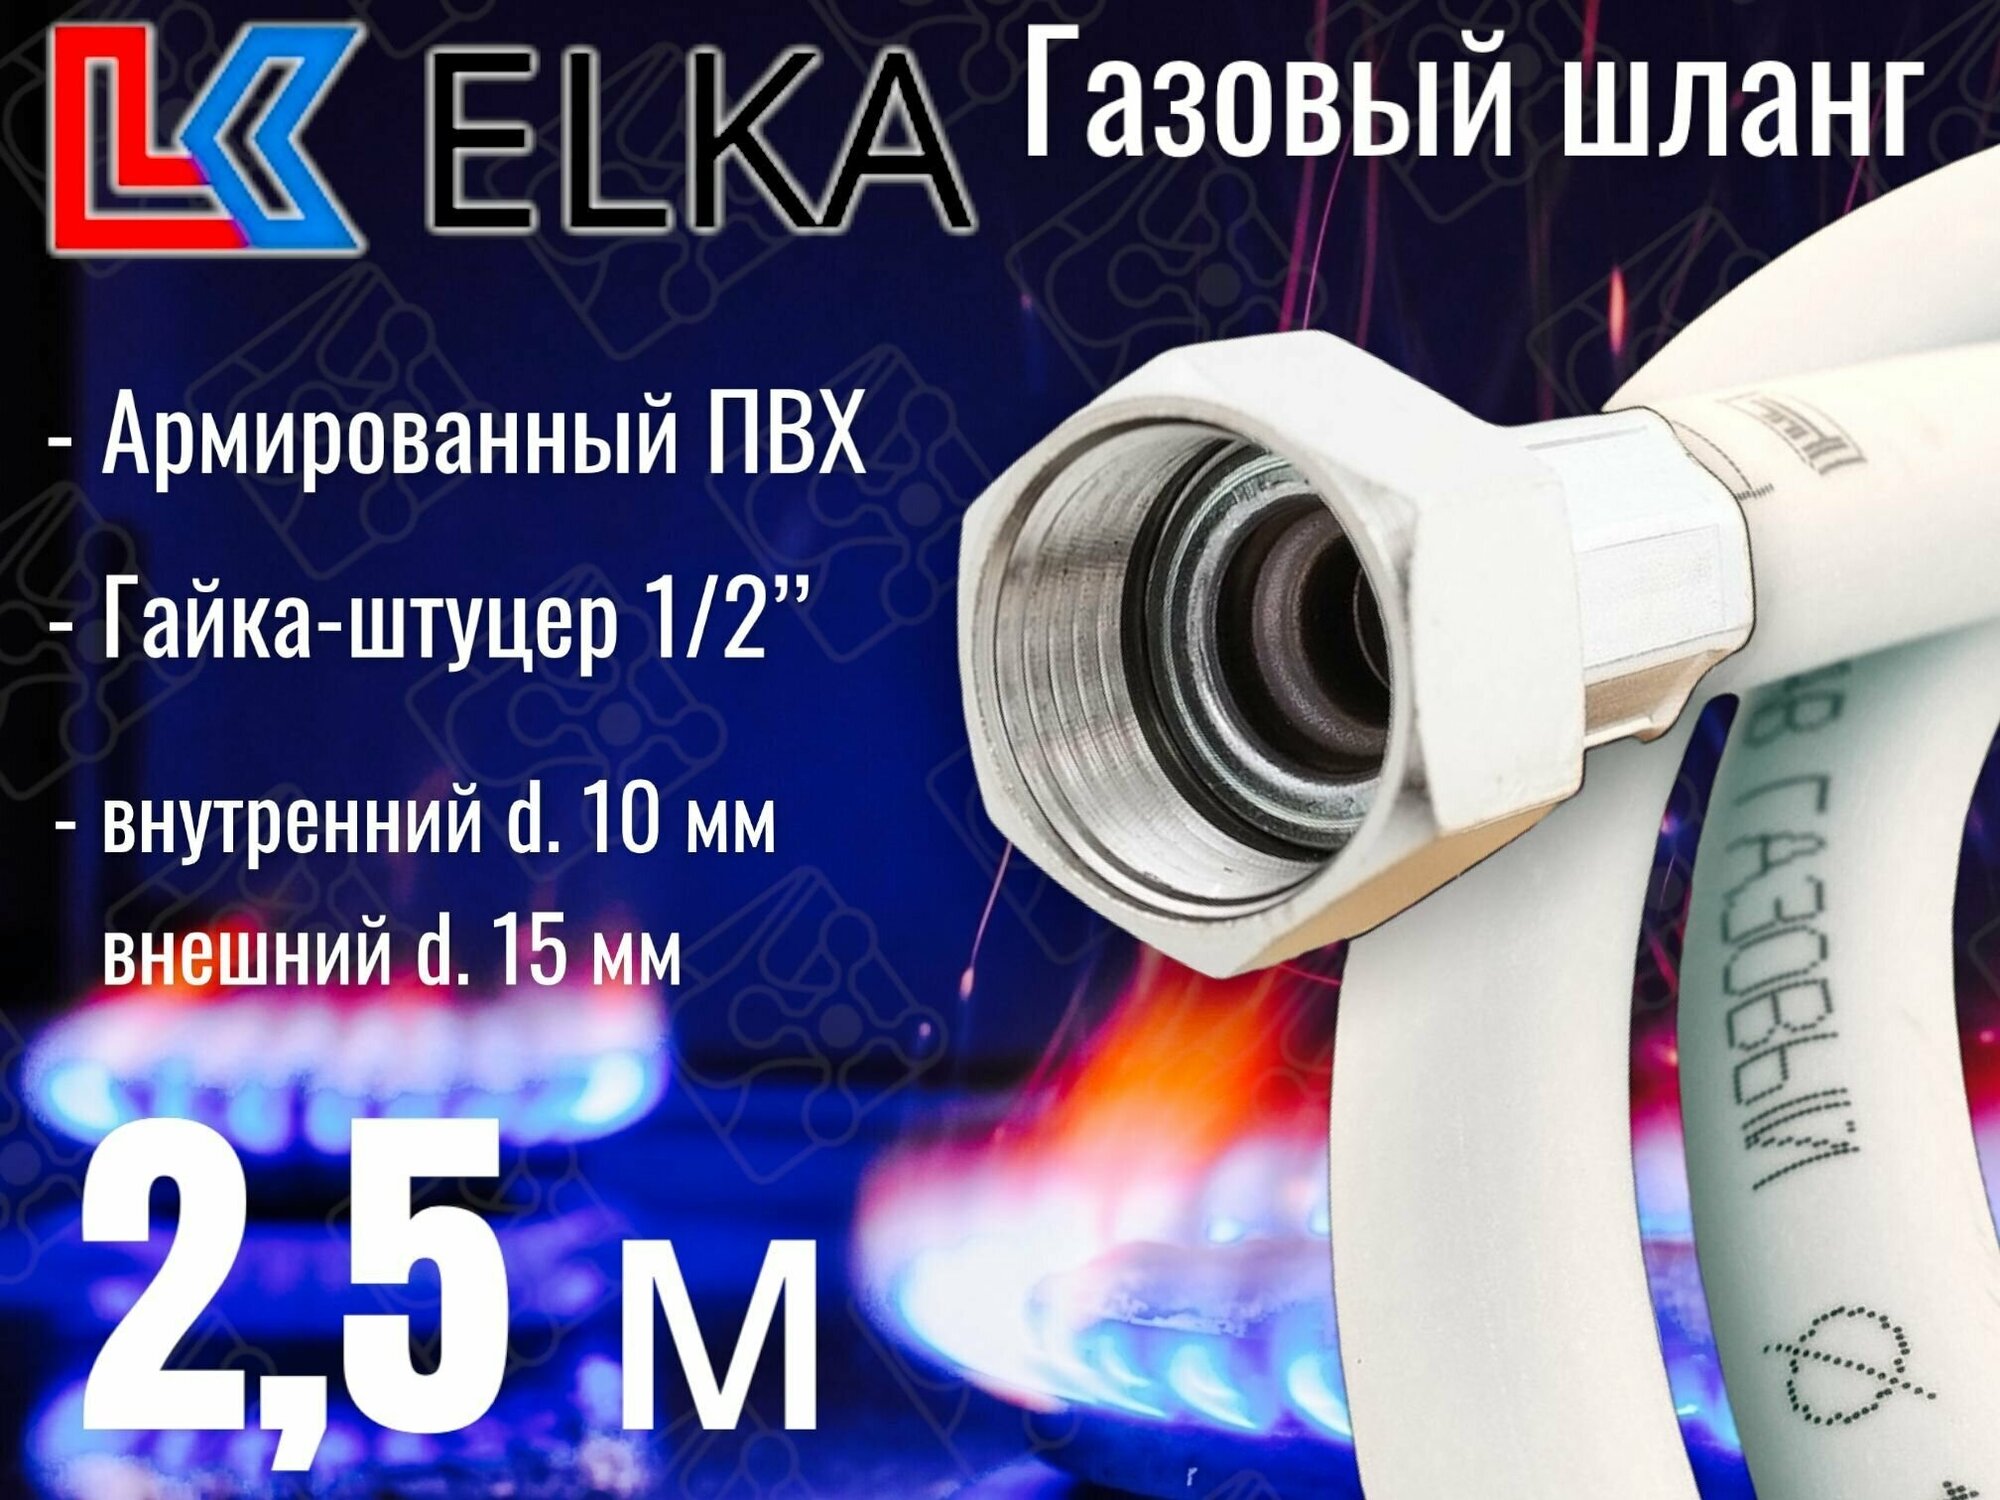 Шланг для газовых приборов 2,5 м ПВХ армированный белый ELKA 1/2" г/ш (в/н) / Шланг газовый 250 см